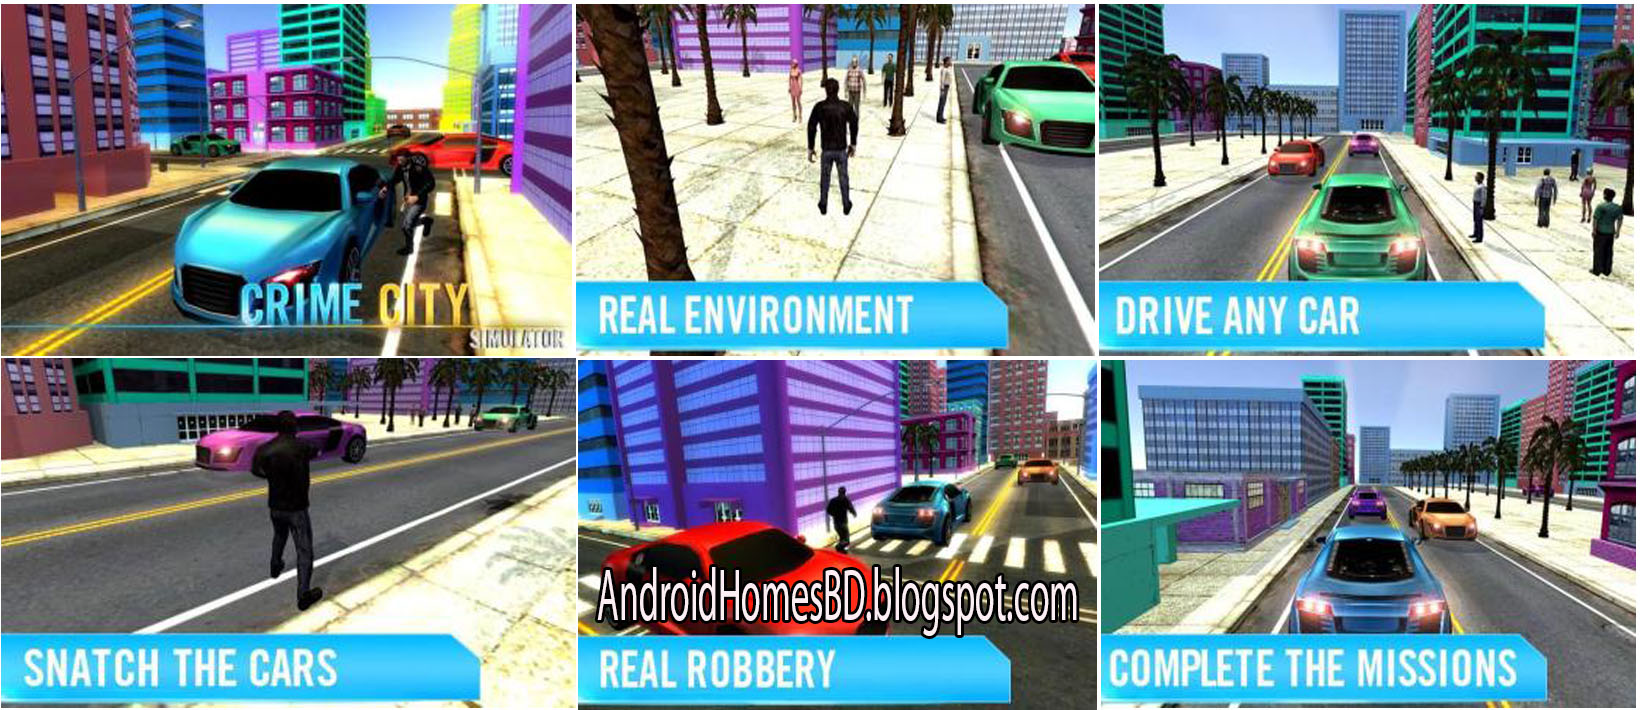 আপনার এন্ডোয়েড মোবাইলে খেলুন Grand theft auto মত একটা গেইম”San Andreas Crime City Sim 3D”।মেগাবাইট আপনার সাধ্যের মধ্যে।